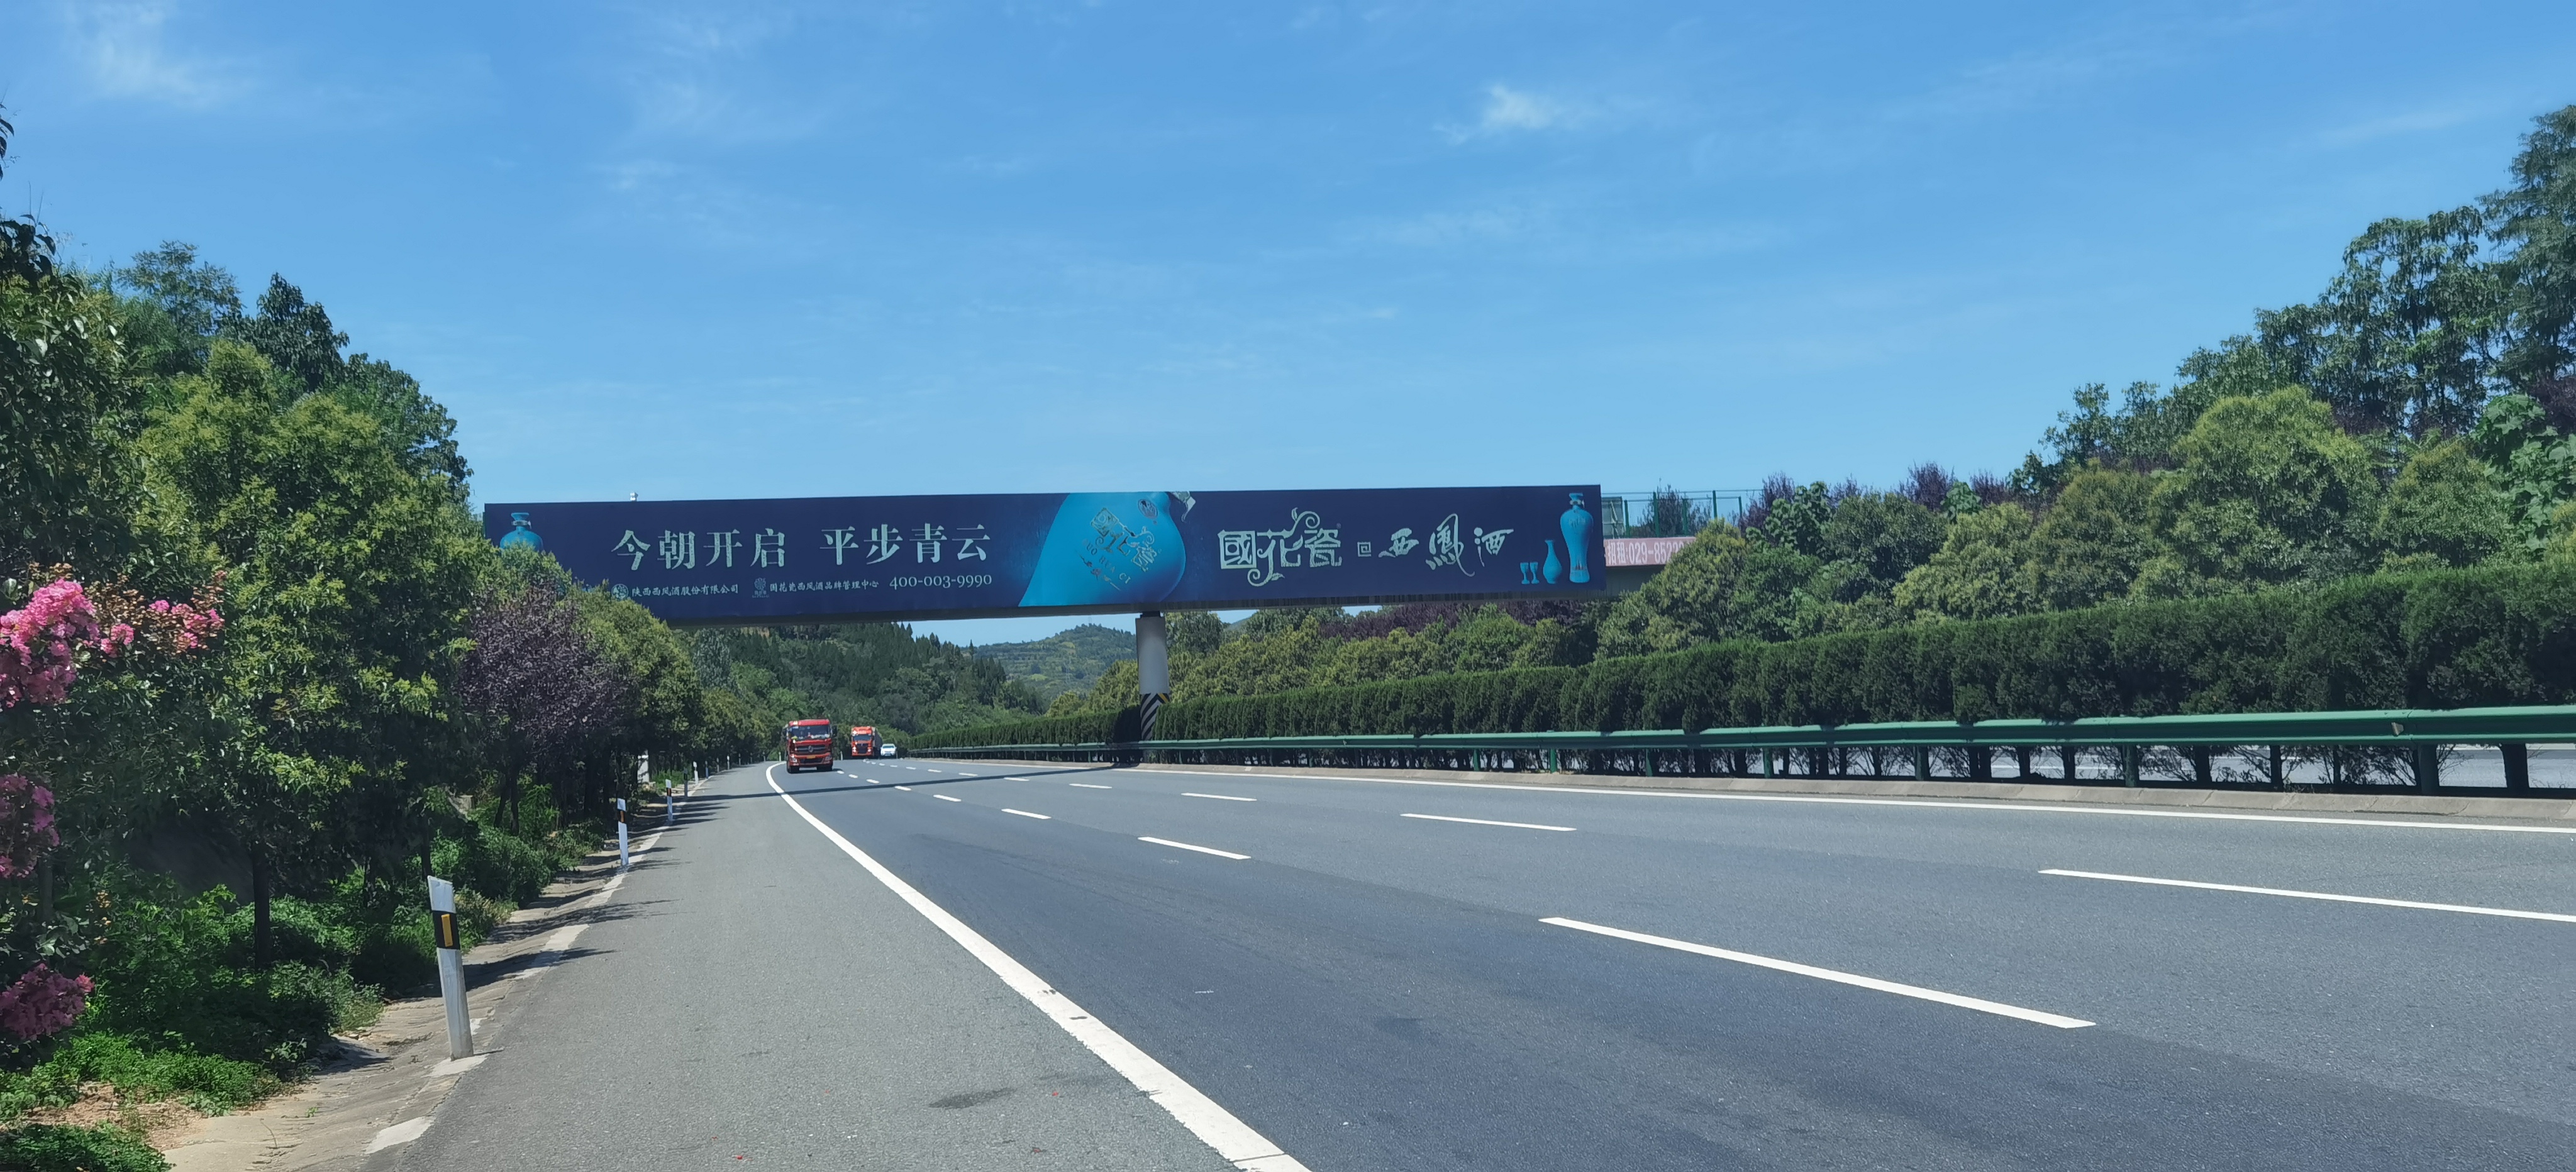 陕西高速路广告 陕西高速路跨线桥广告